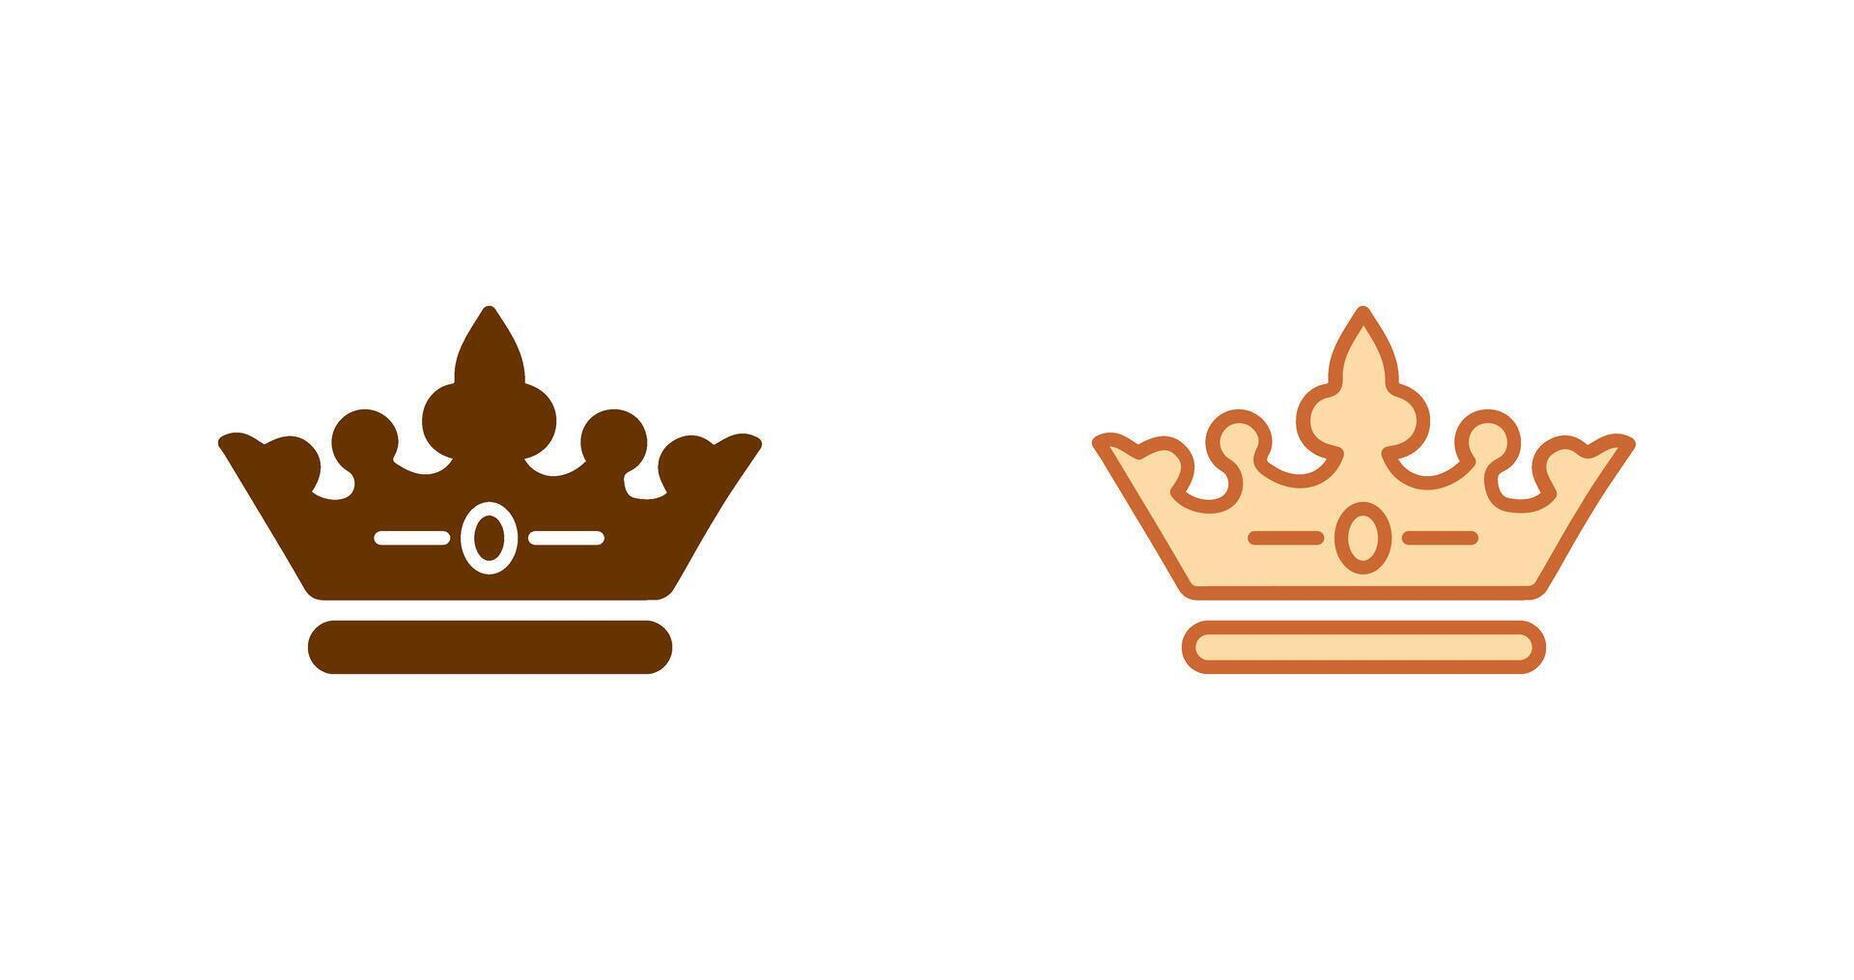 Crown Icon Design vector